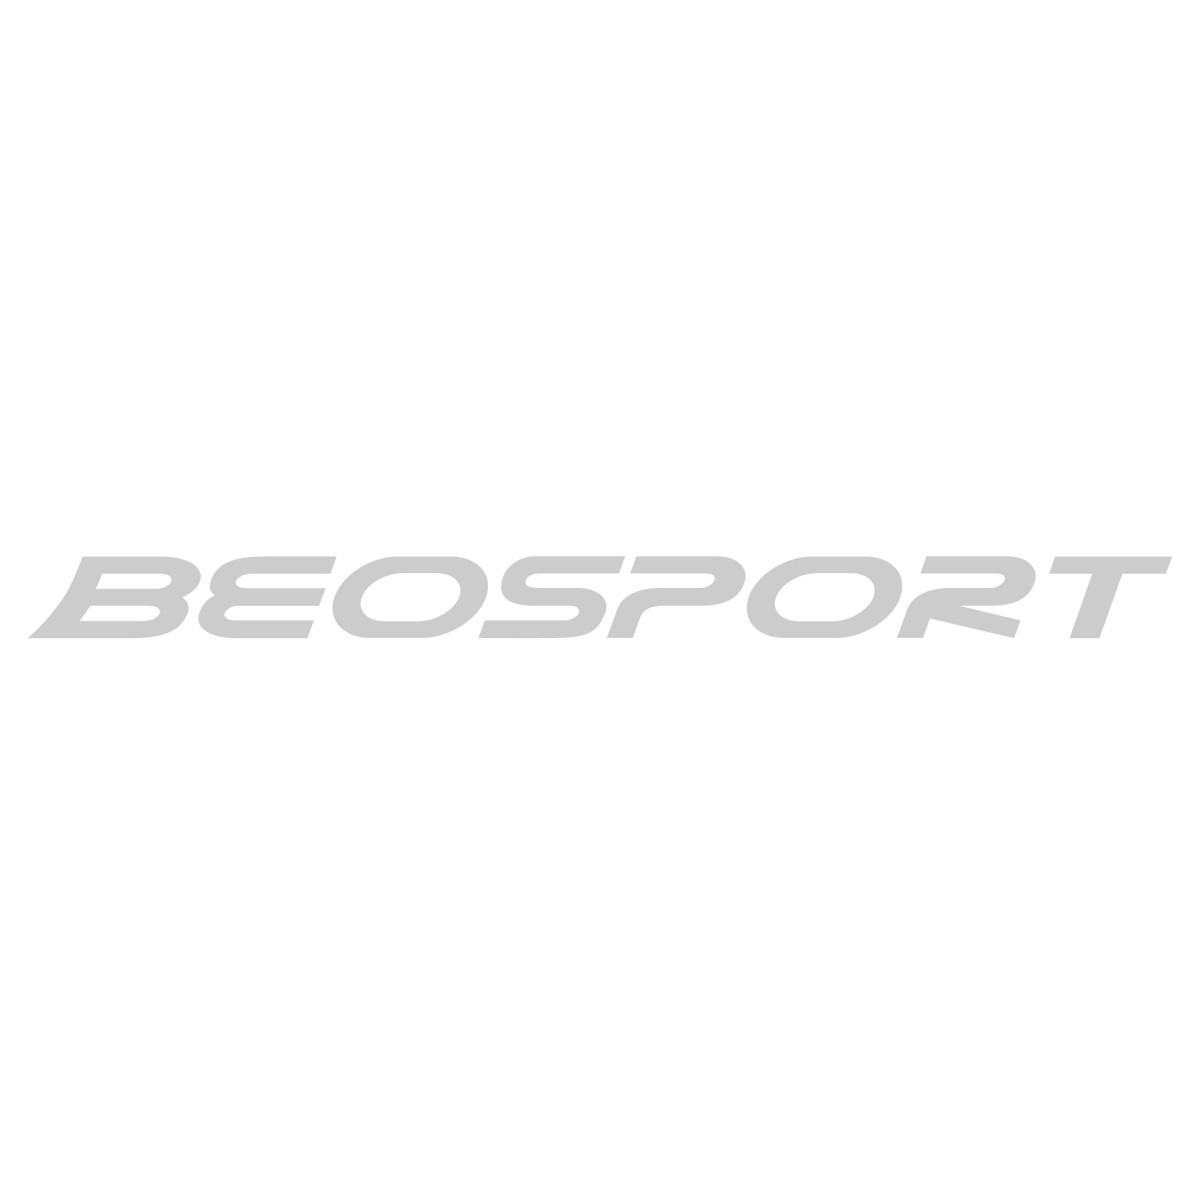 DC Shoes - Brendovi - Beosport.com